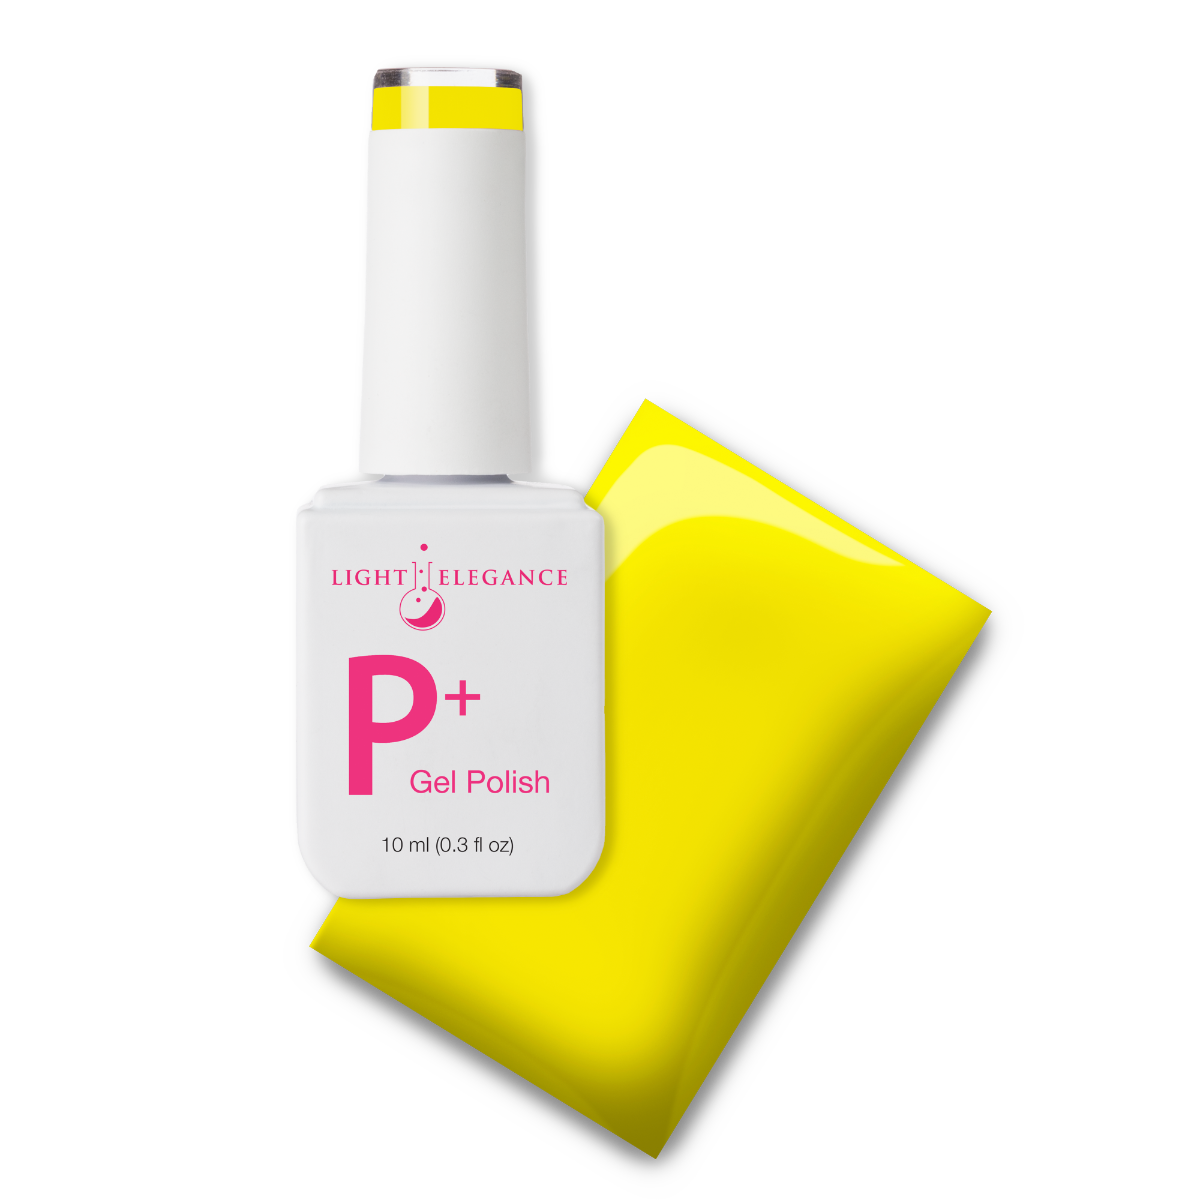 Light Elegance P+ Soak Off Color Gel - Psychedelic :: New Packaging